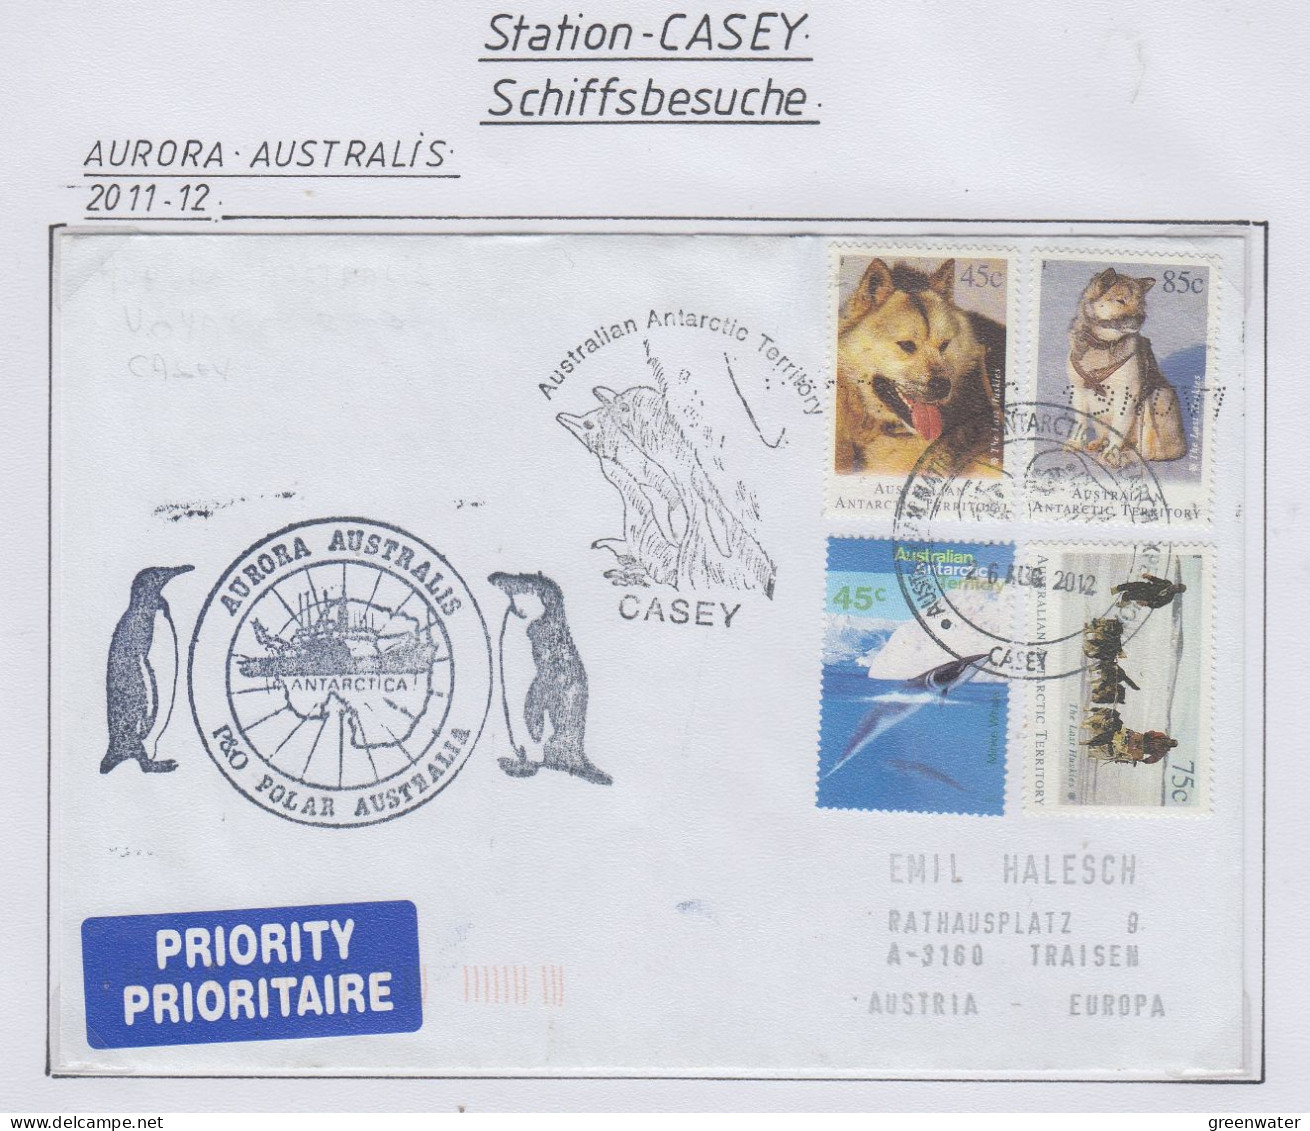 AAT Ship Visit Aurora Australis  Ca Casey 26 AUG 2012 (CS179) - Briefe U. Dokumente